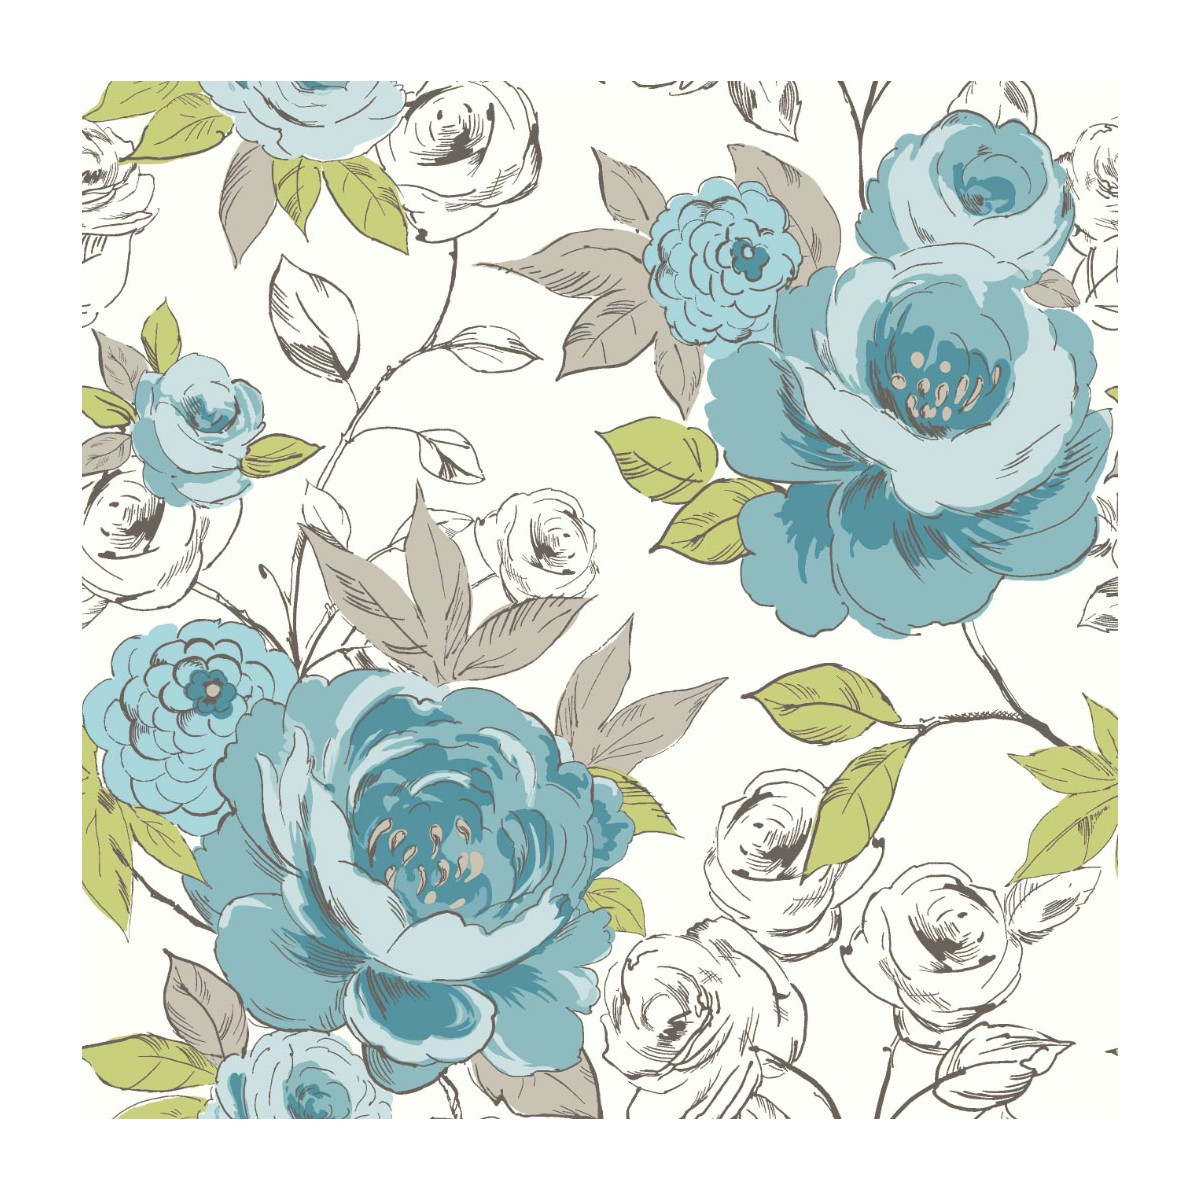 [46+] Teal Flower Wallpaper | WallpaperSafari.com